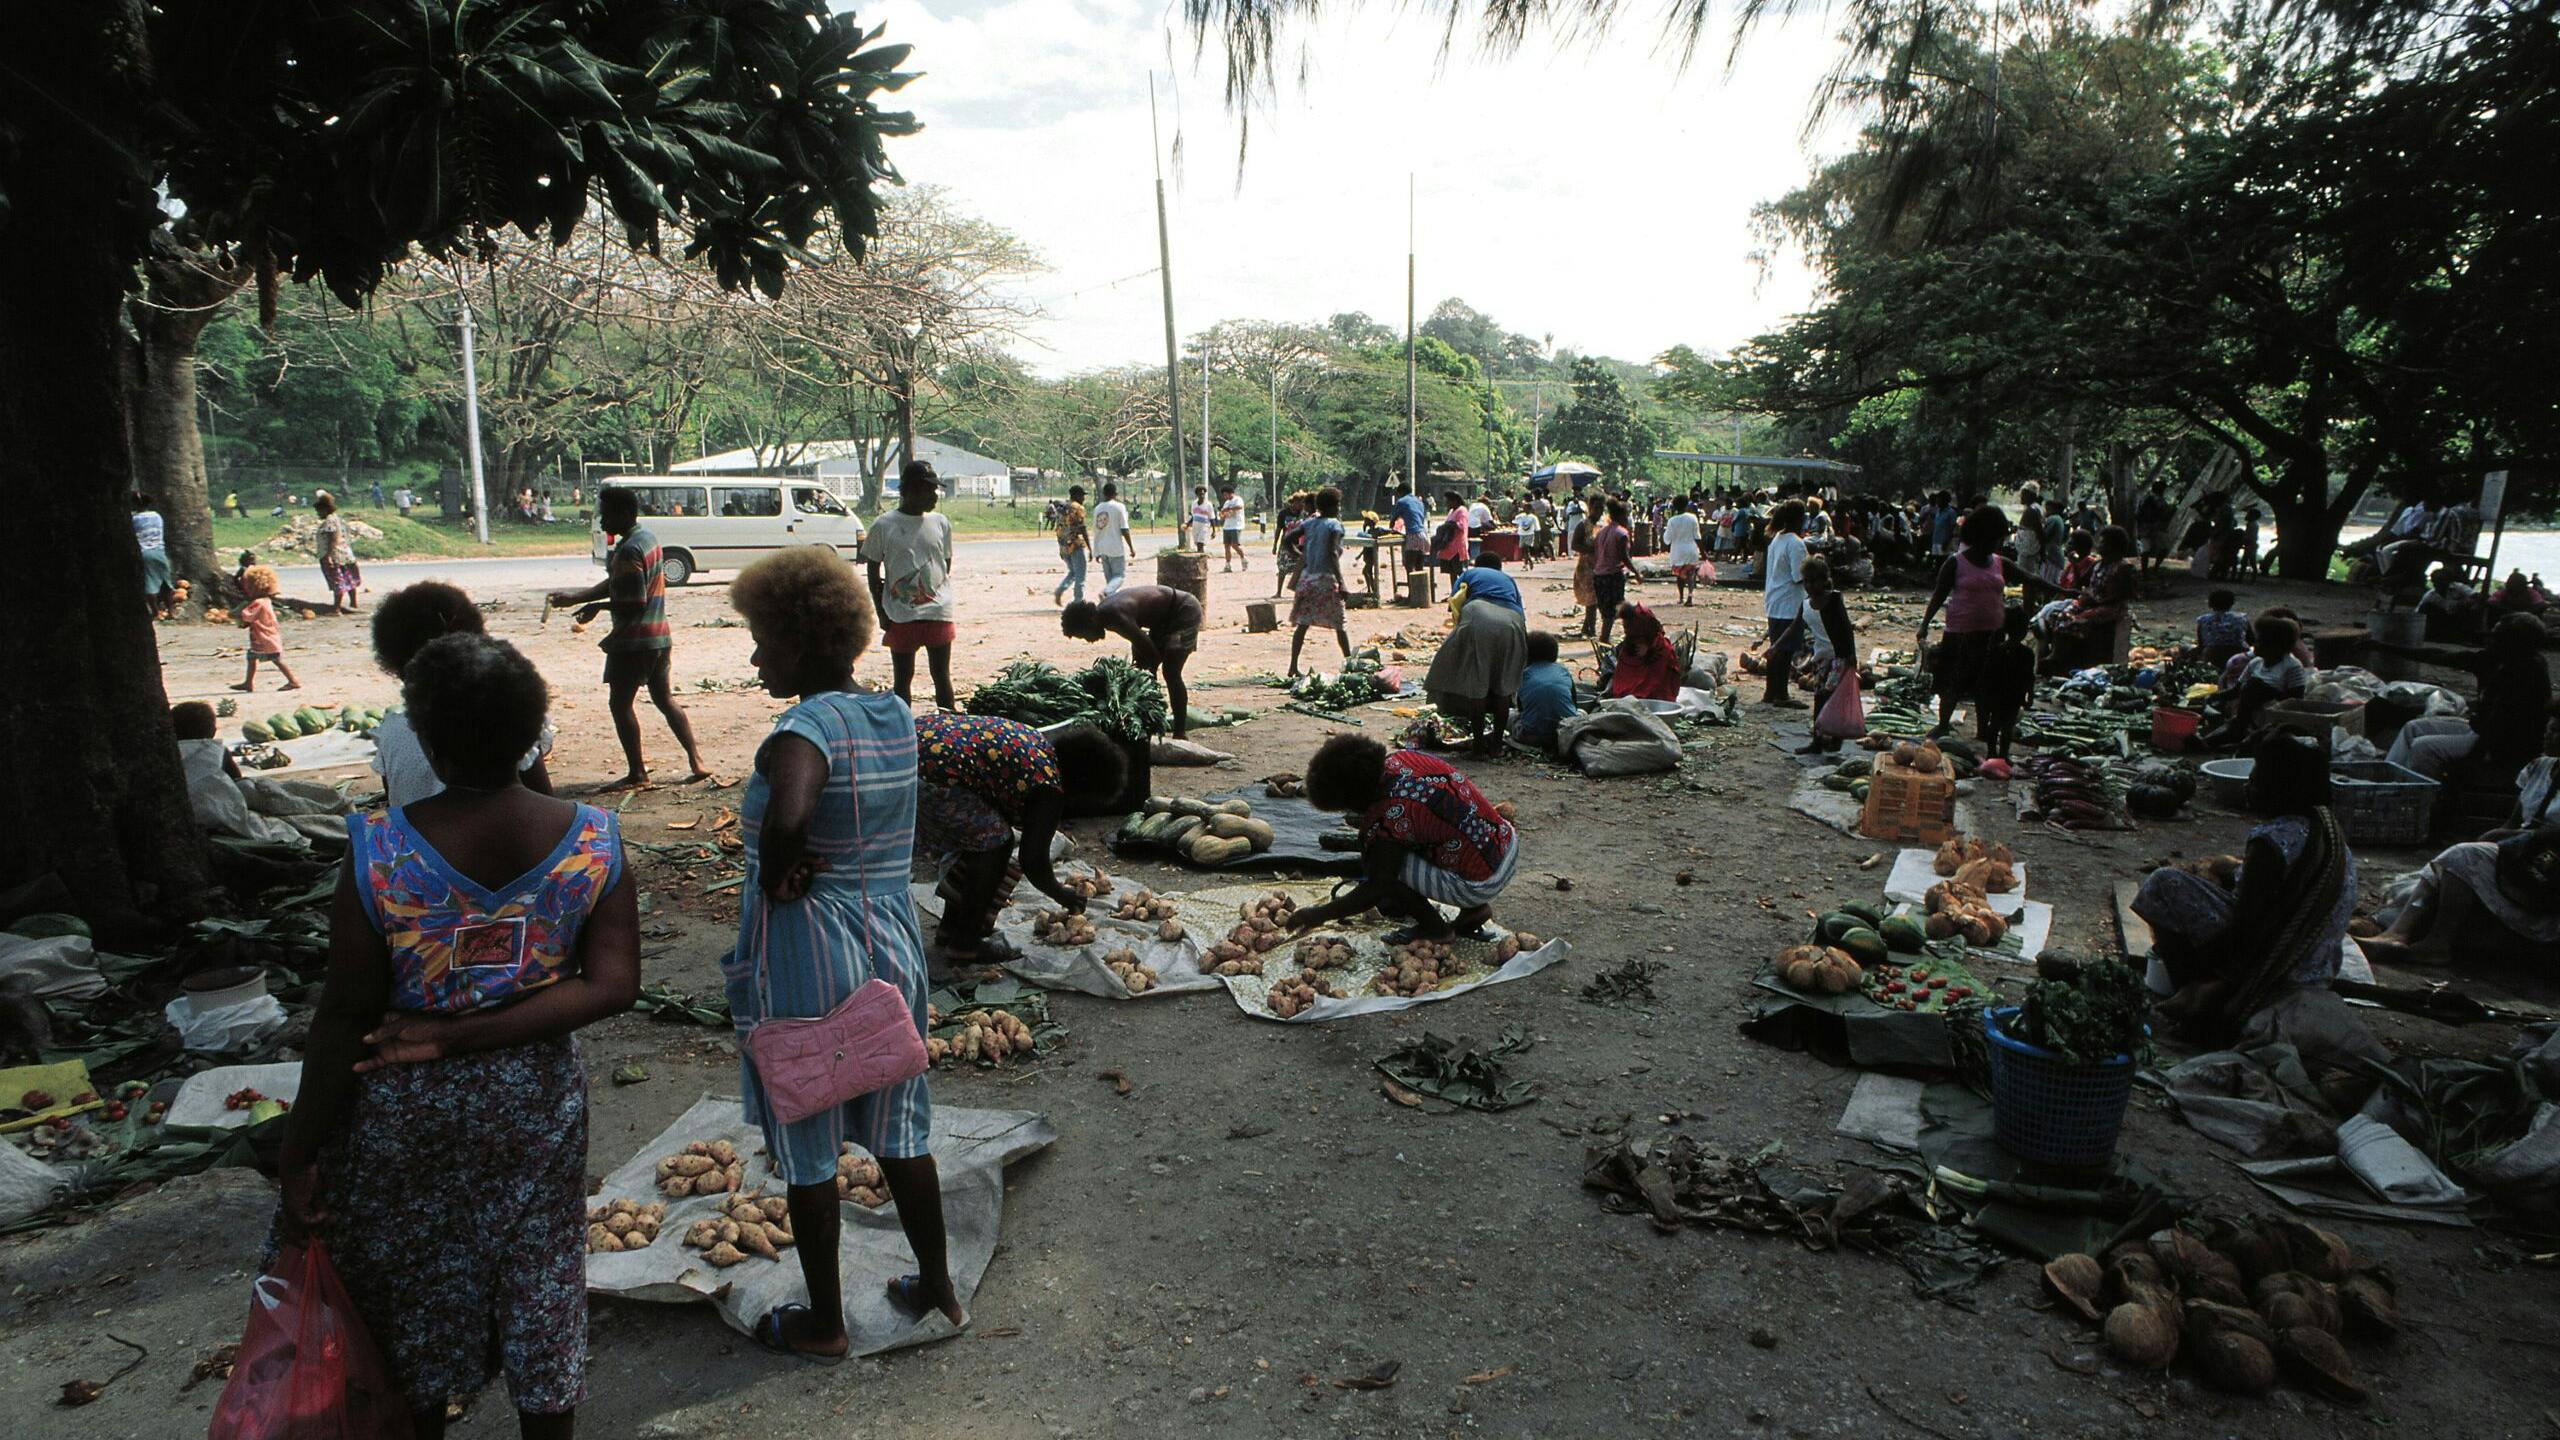 Salomonseilanden Salomons eilanden. Solomon Islands, Guadalcanal, Honiara 1996 Een van de vele informele marktjes langs de kustweg van Honiara Foto Goos van der Veen/Hollandse Hoogte